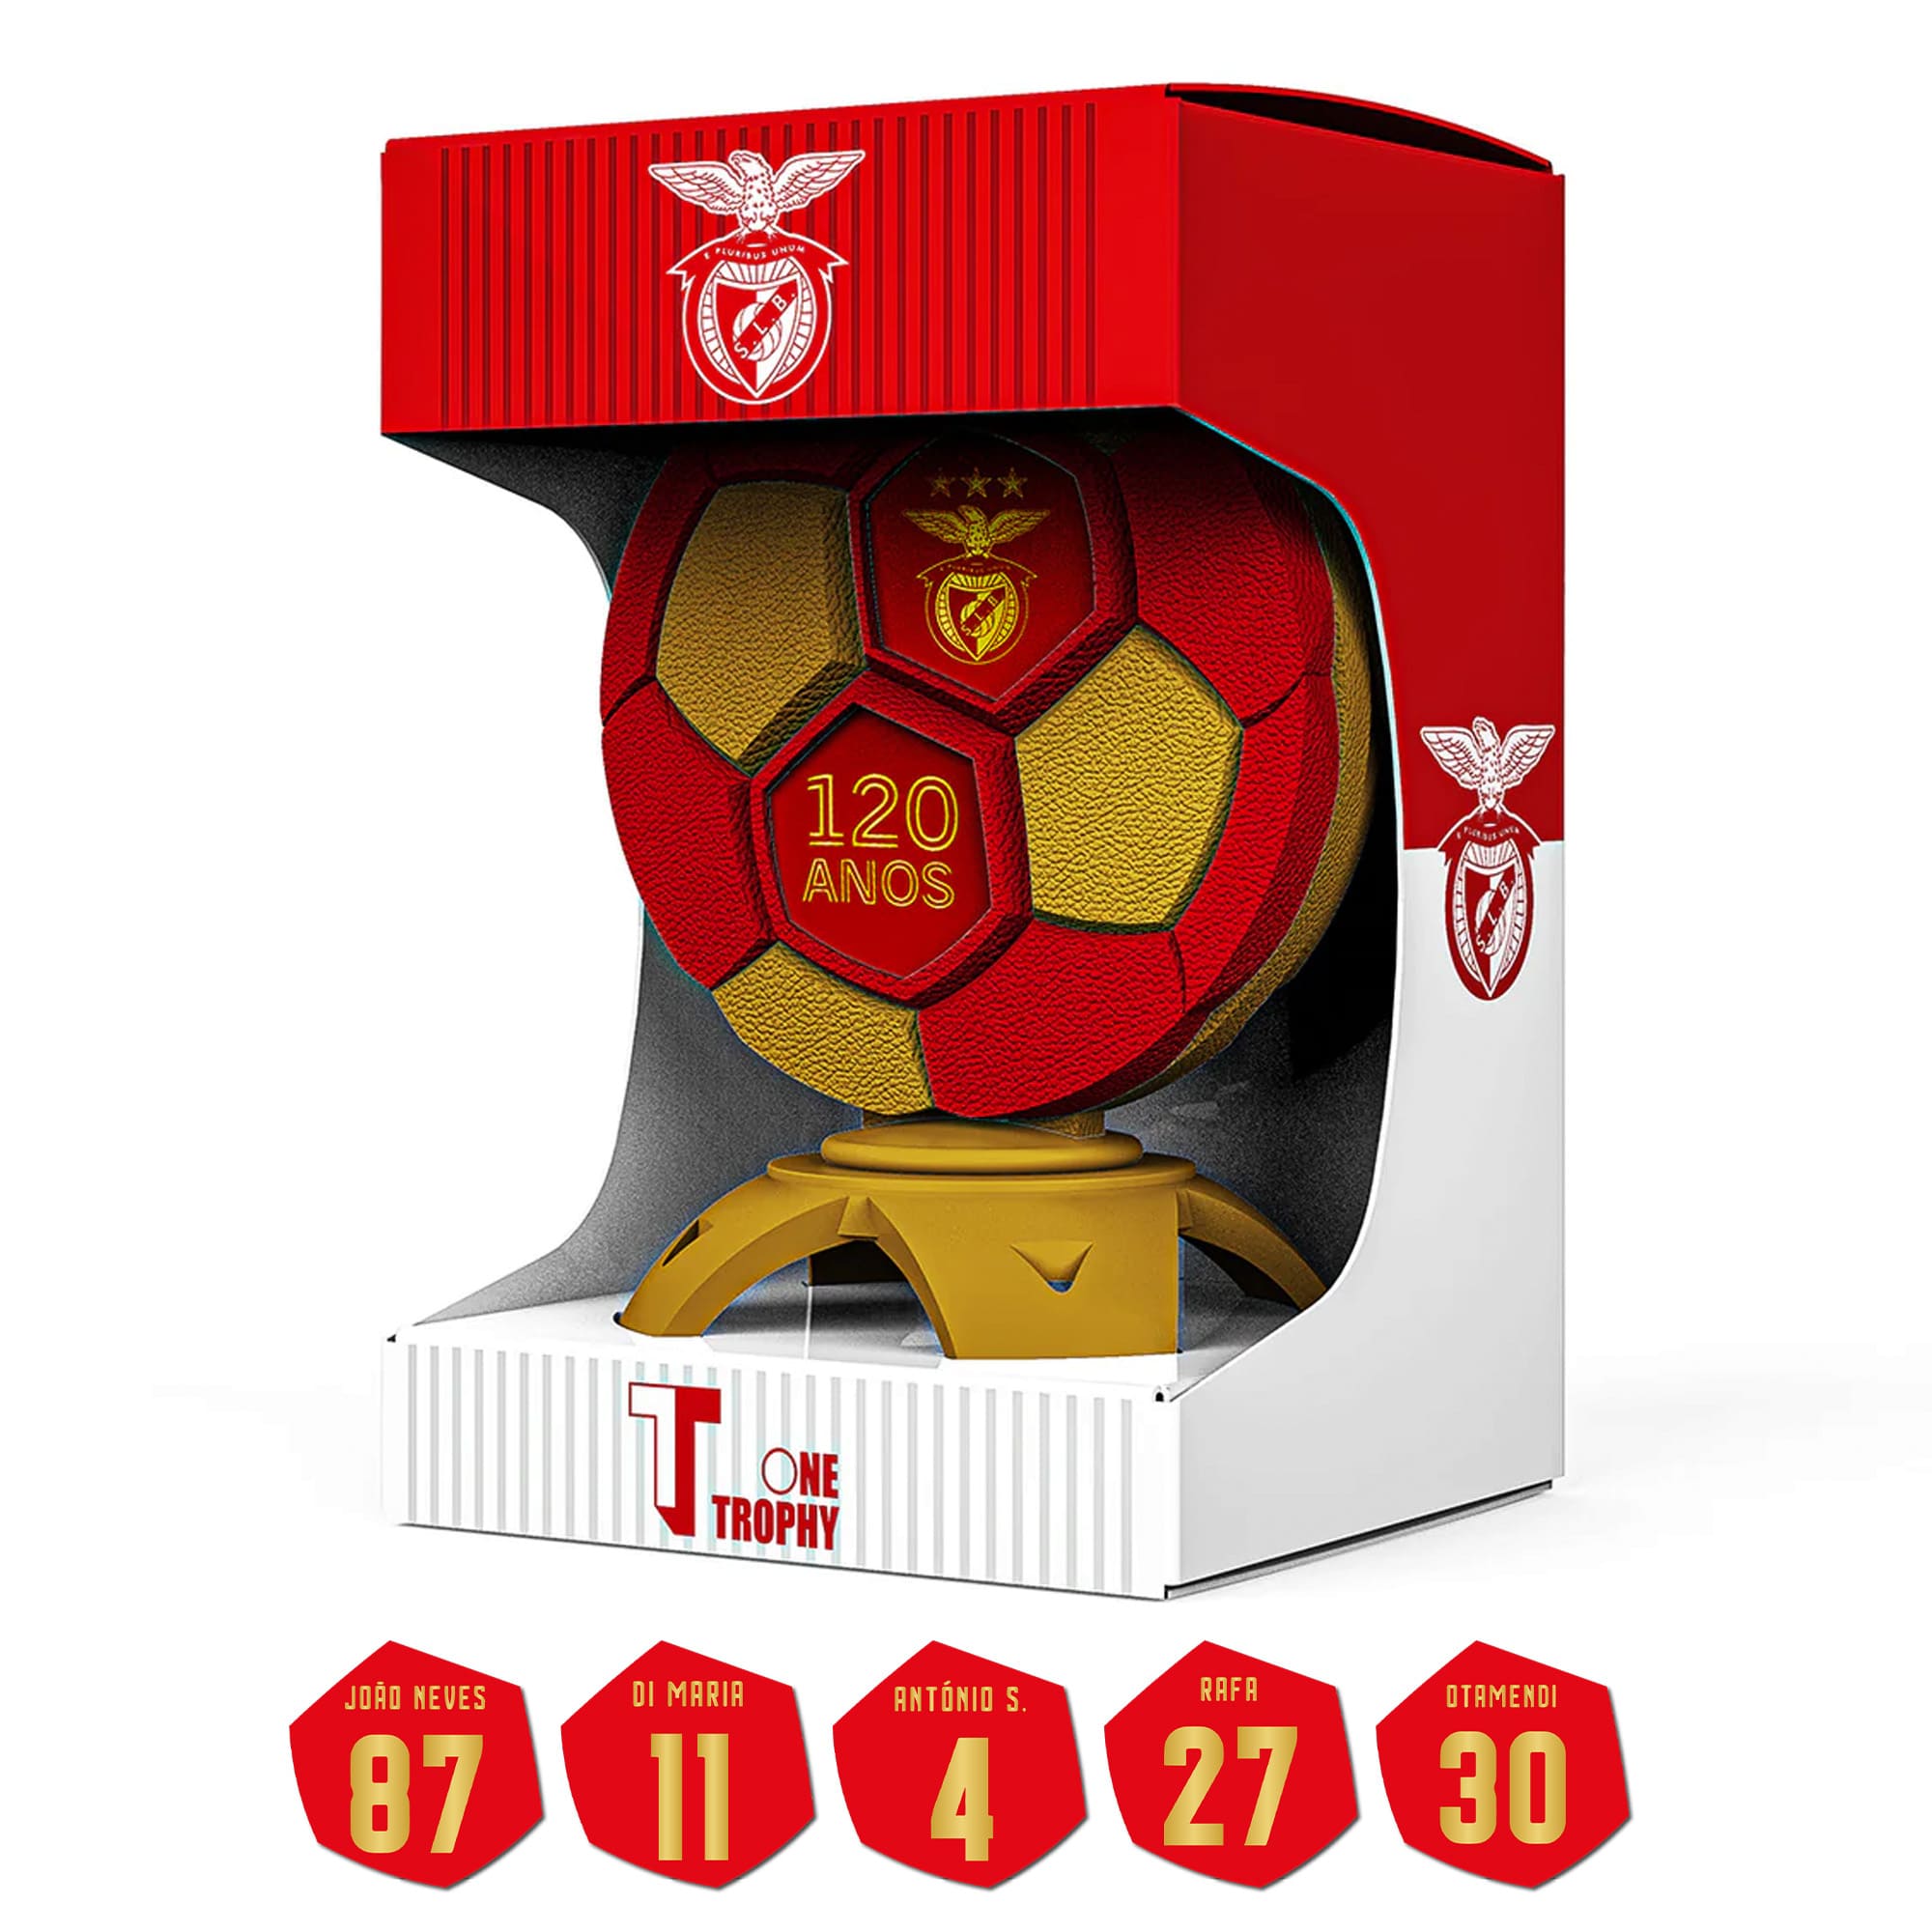 OneTrophy X SL Benfica - 120 Anos - Pacote de nomes de jogadores grátis